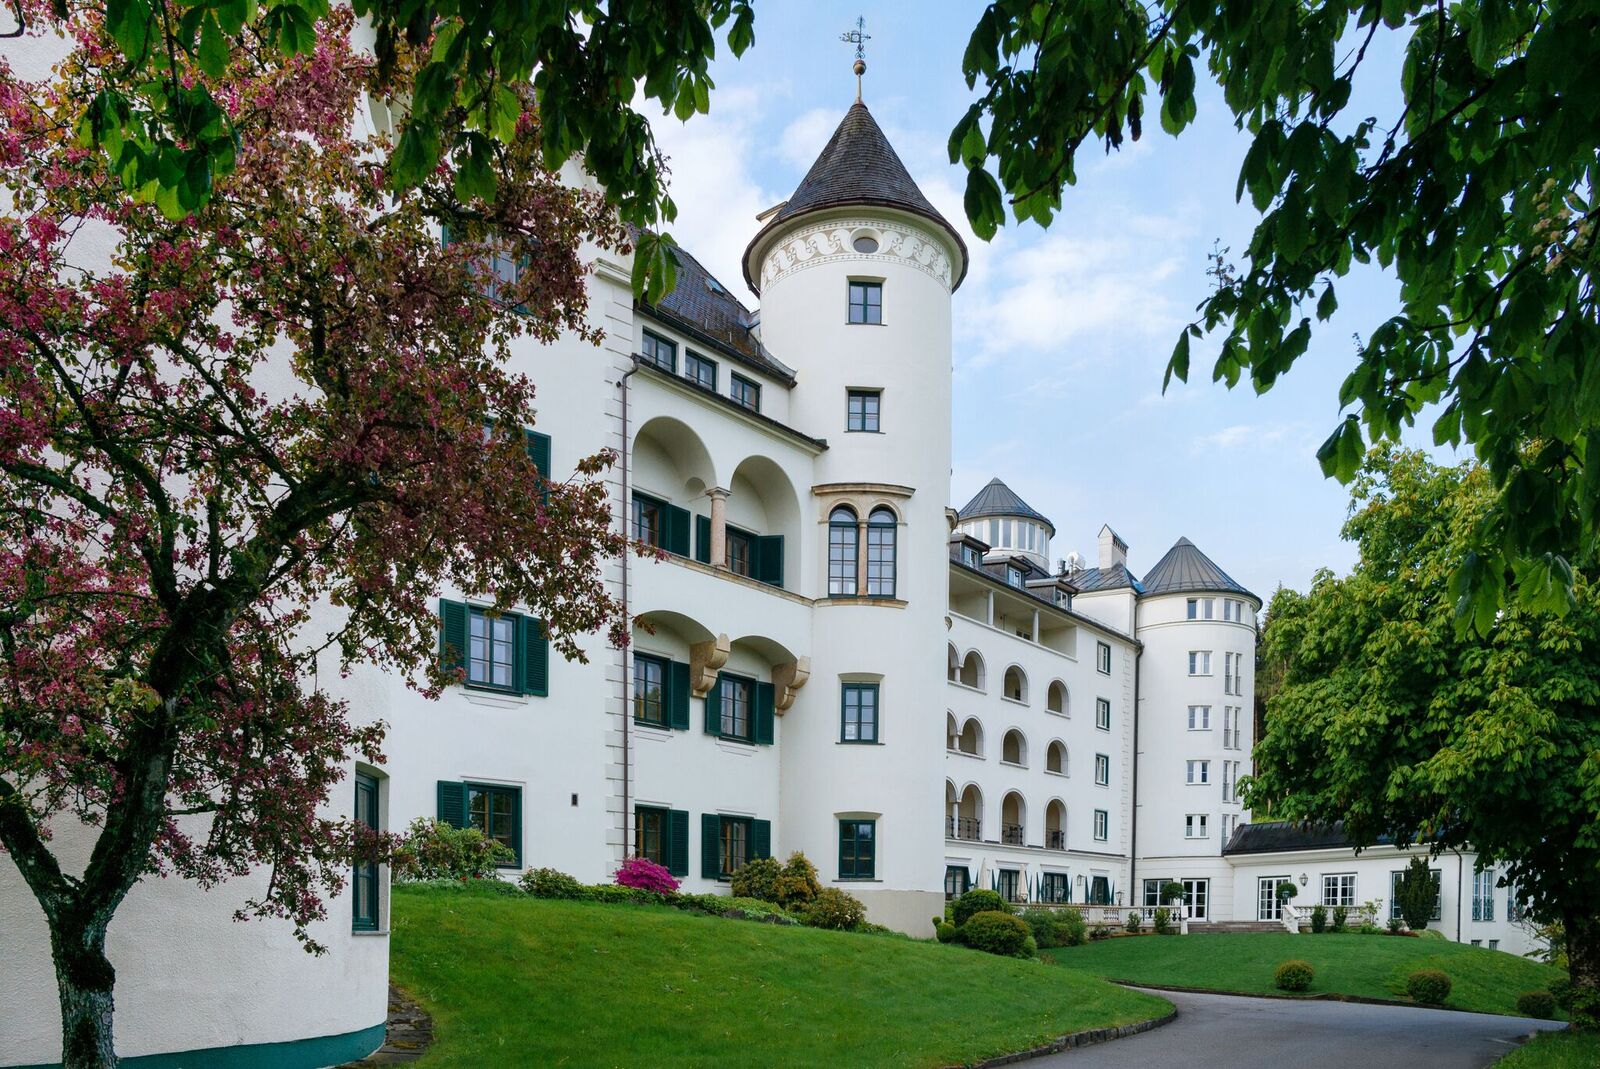 Romantik Hotel Schloss Pichlarn in Aigen im steierischen Ennstal.
